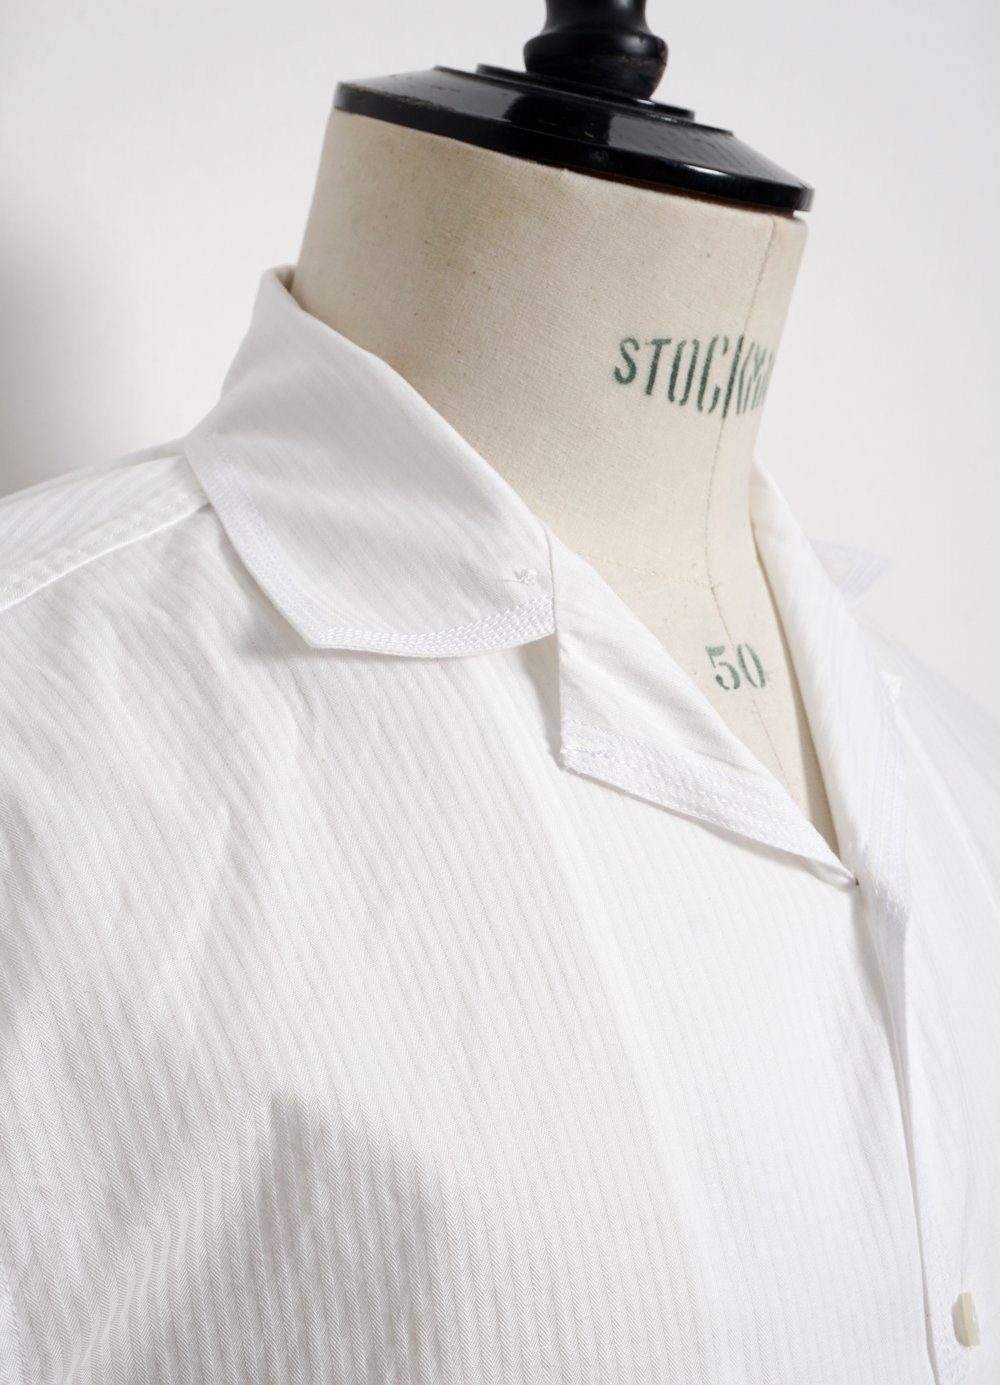 HANSEN GARMENTS - JONNY | Short Sleeve Shirt | White White - HANSEN Garments